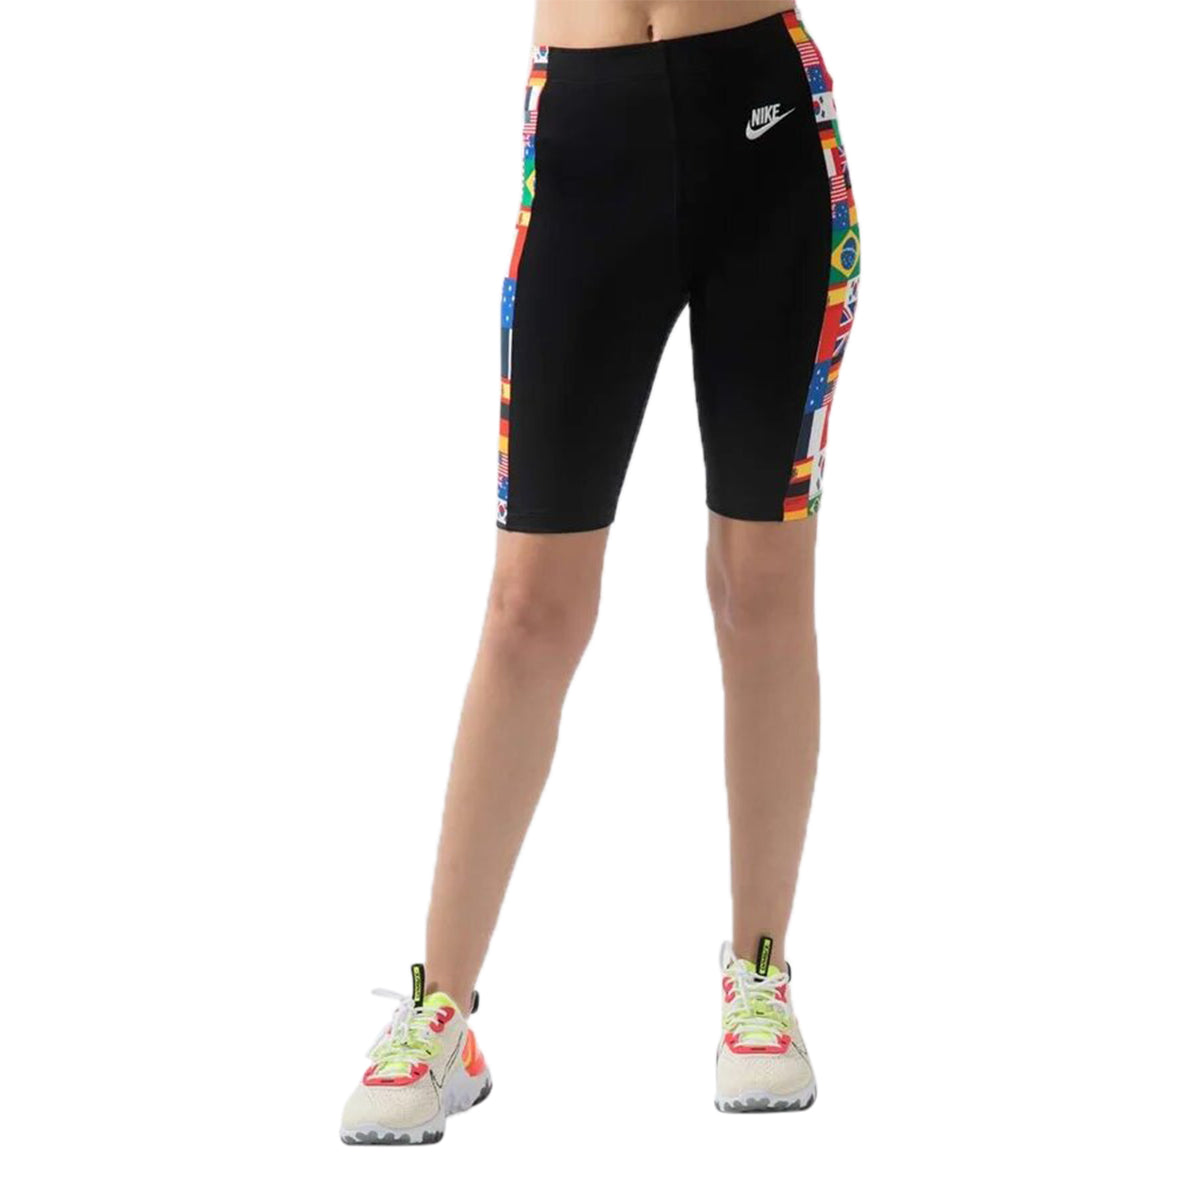 Nike Flag Pack Bike Shorts Womens Style : Cj3221